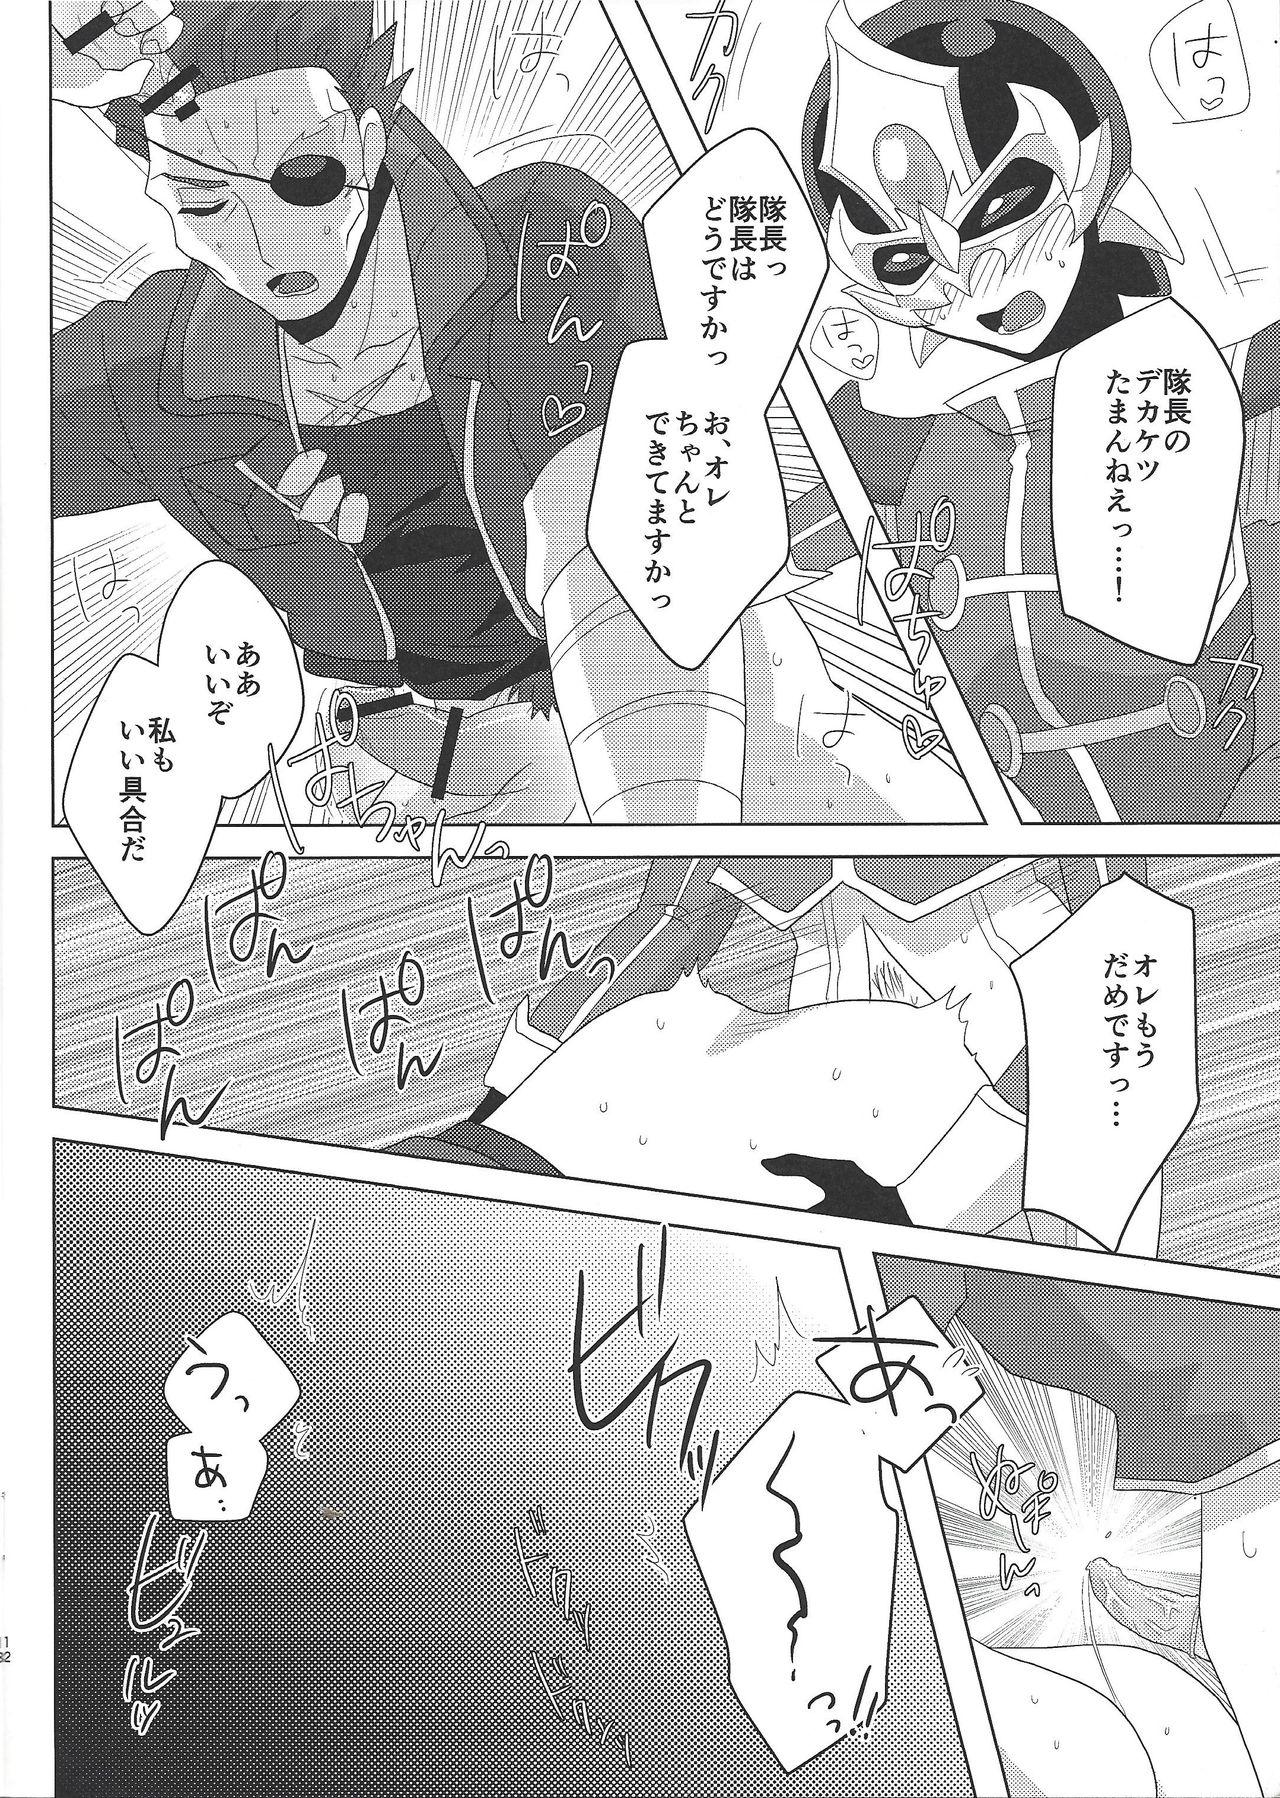 Realamateur Taichō! Kon'ya mo onegai shimasu! - Yu gi oh arc v Korea - Page 11